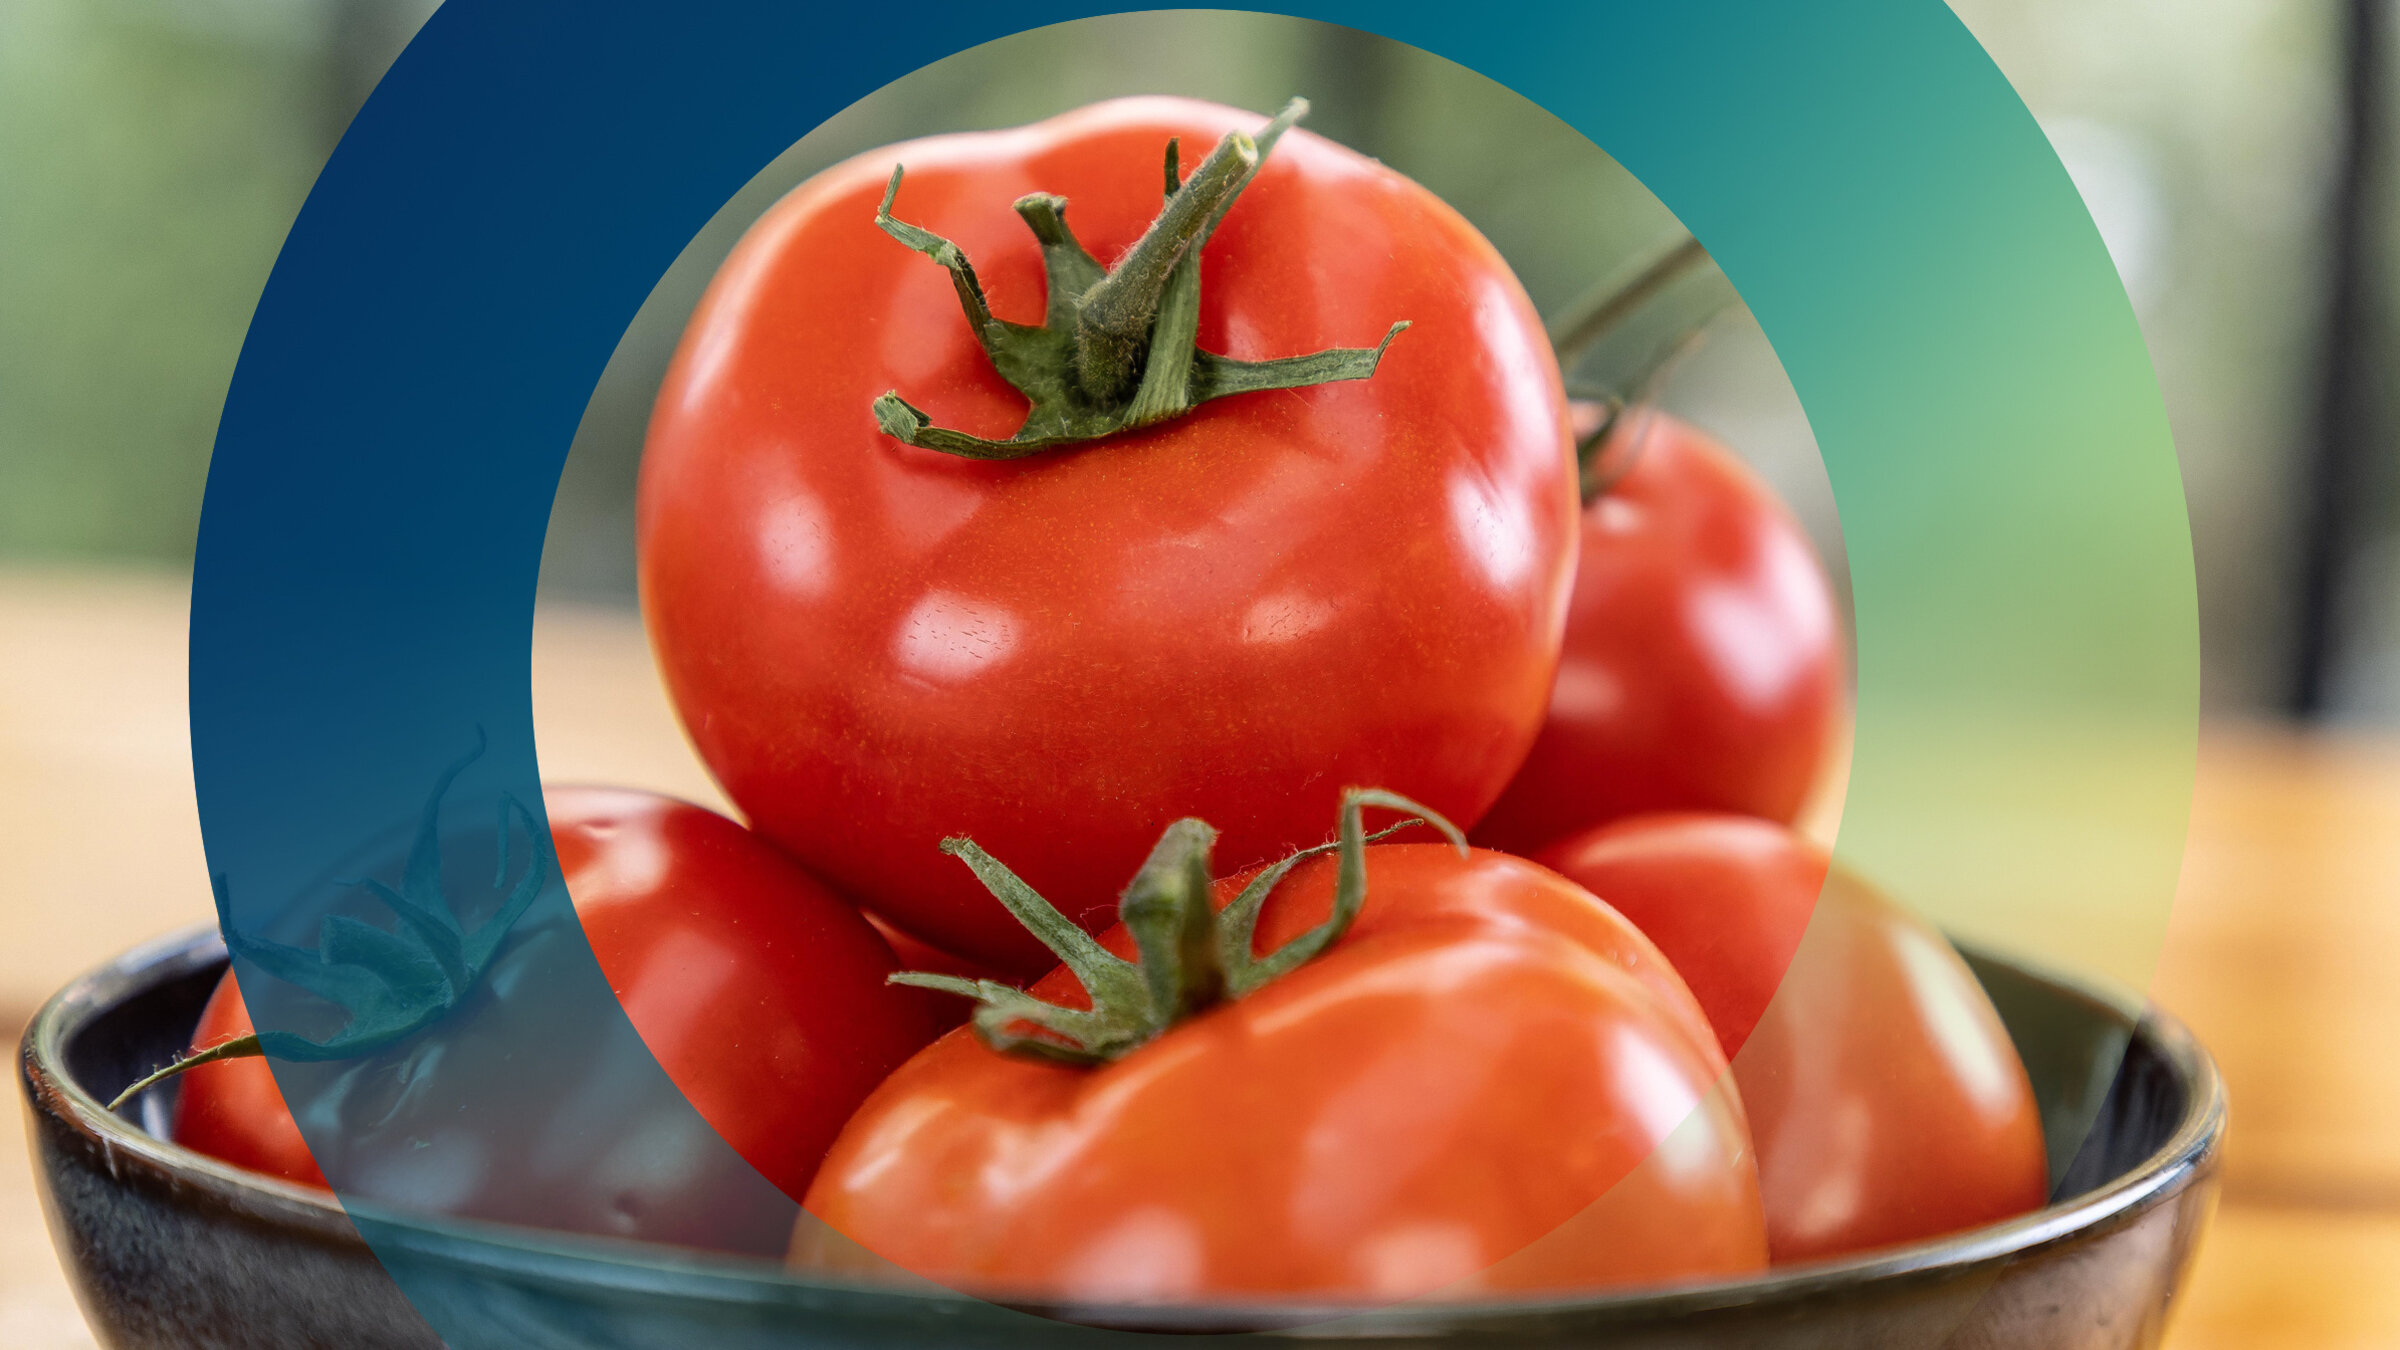 "planet e.: Genuss mit Beigeschmack - Tomaten": In einer Schale stapeln sich rote reife Tomaten.